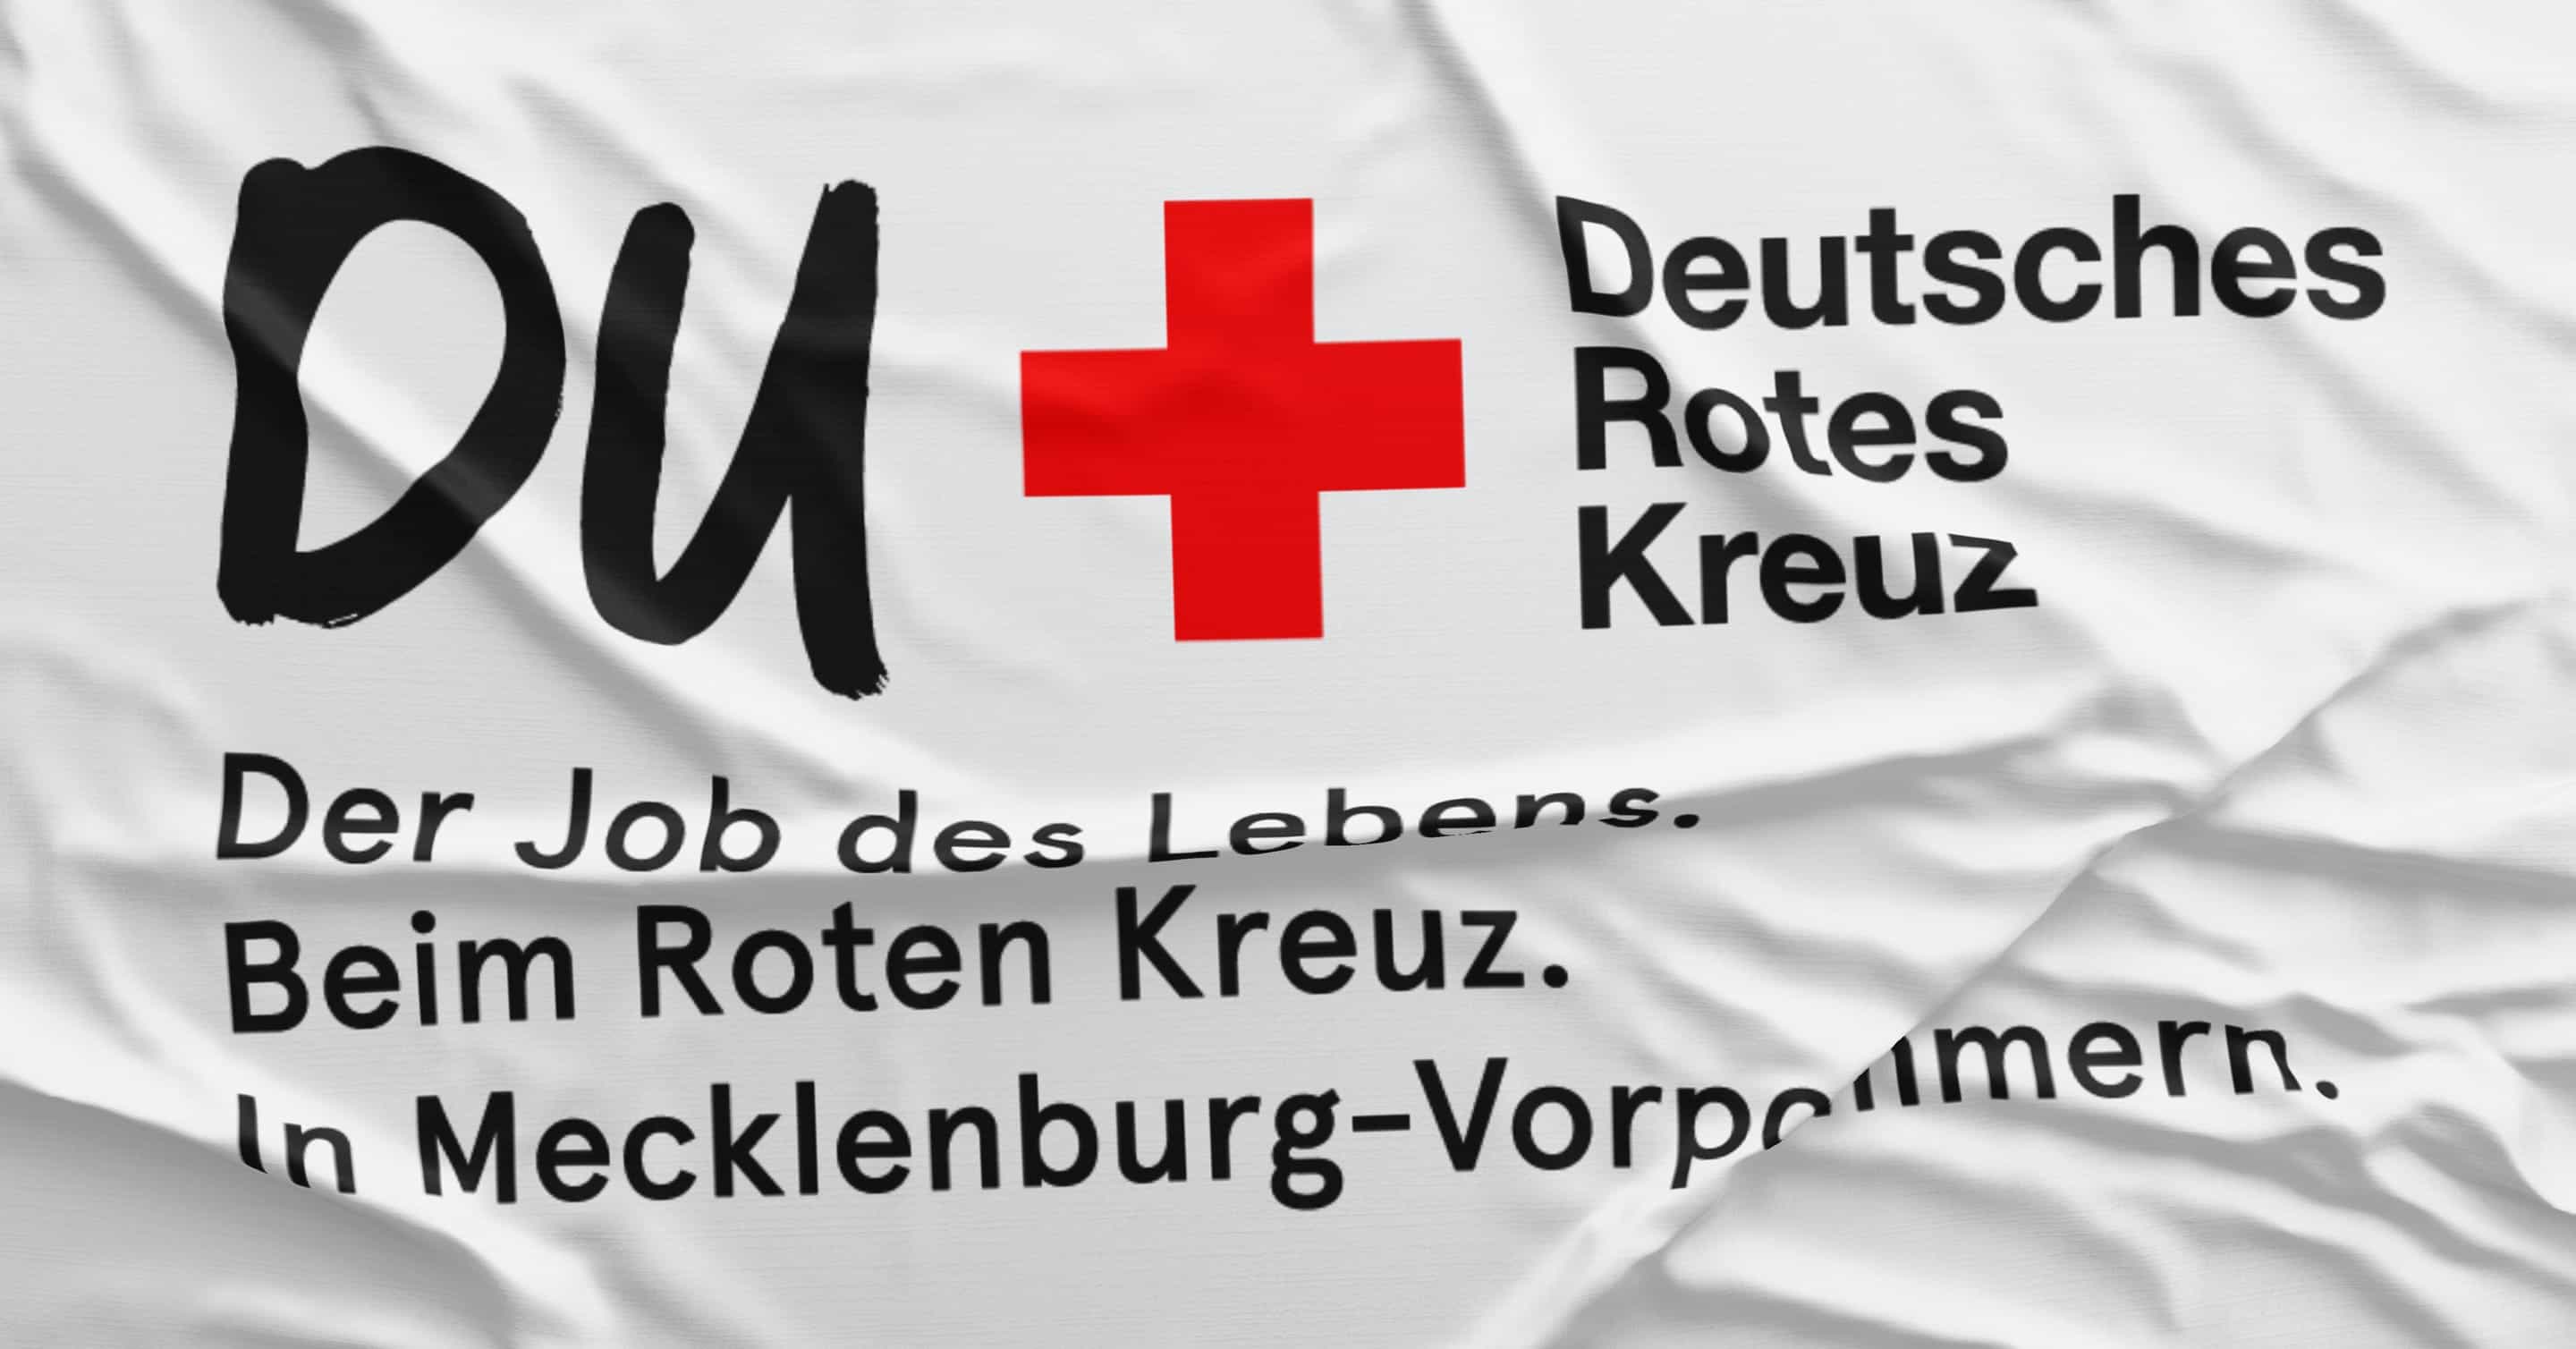 Das Logo der Marke und der Claim der von uns entwickelten Personalkampagne für das Deutsche Rote Kreuz in Mecklenburg-Vorpommern.